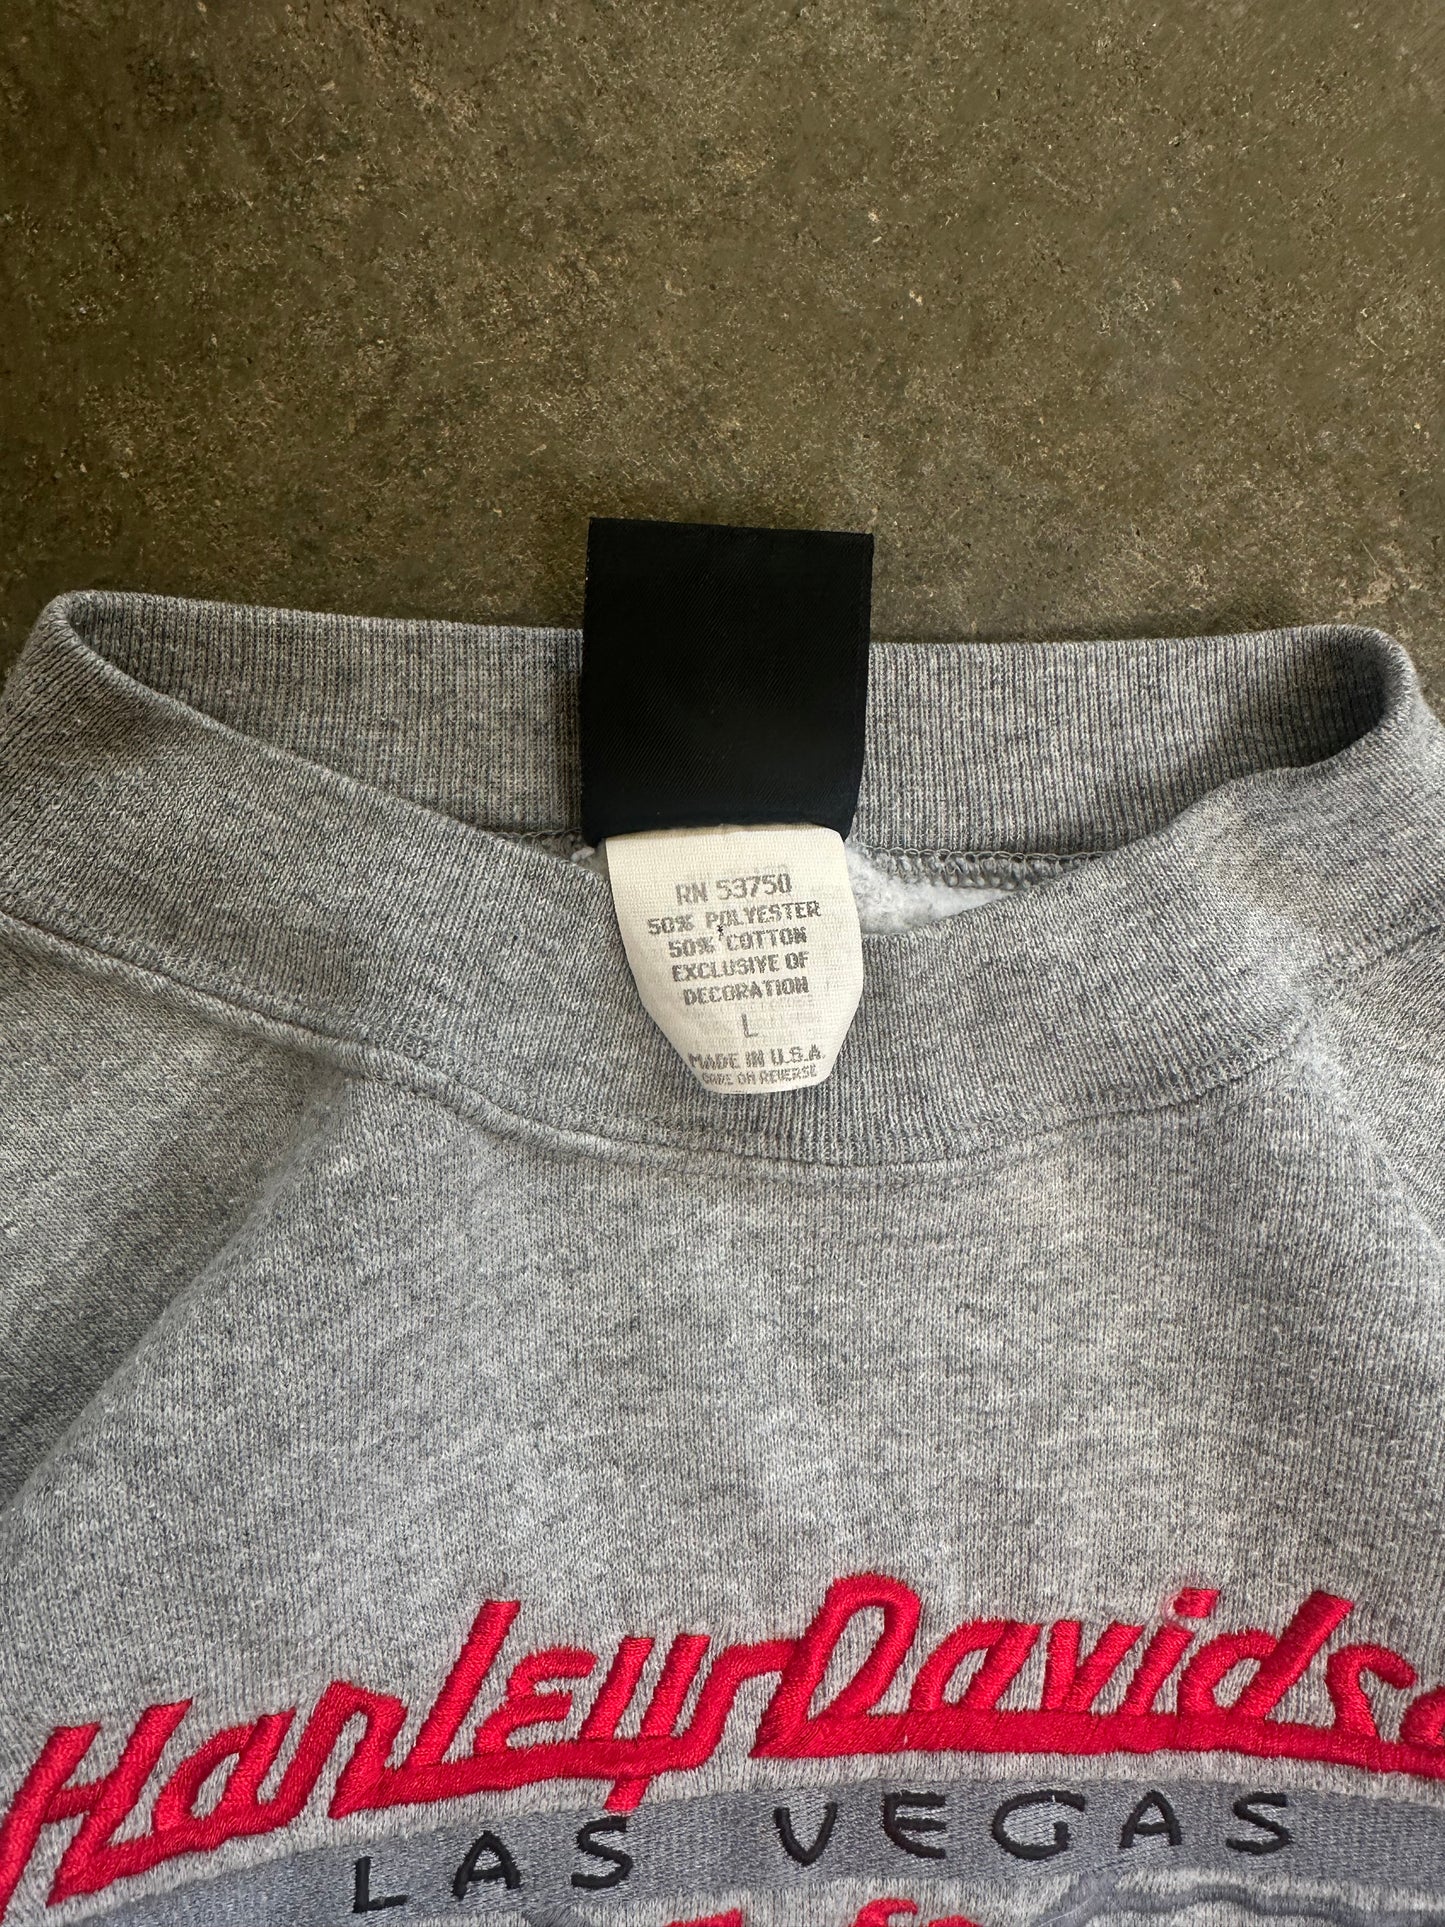 (L) Vintage Harley Sweatshirt